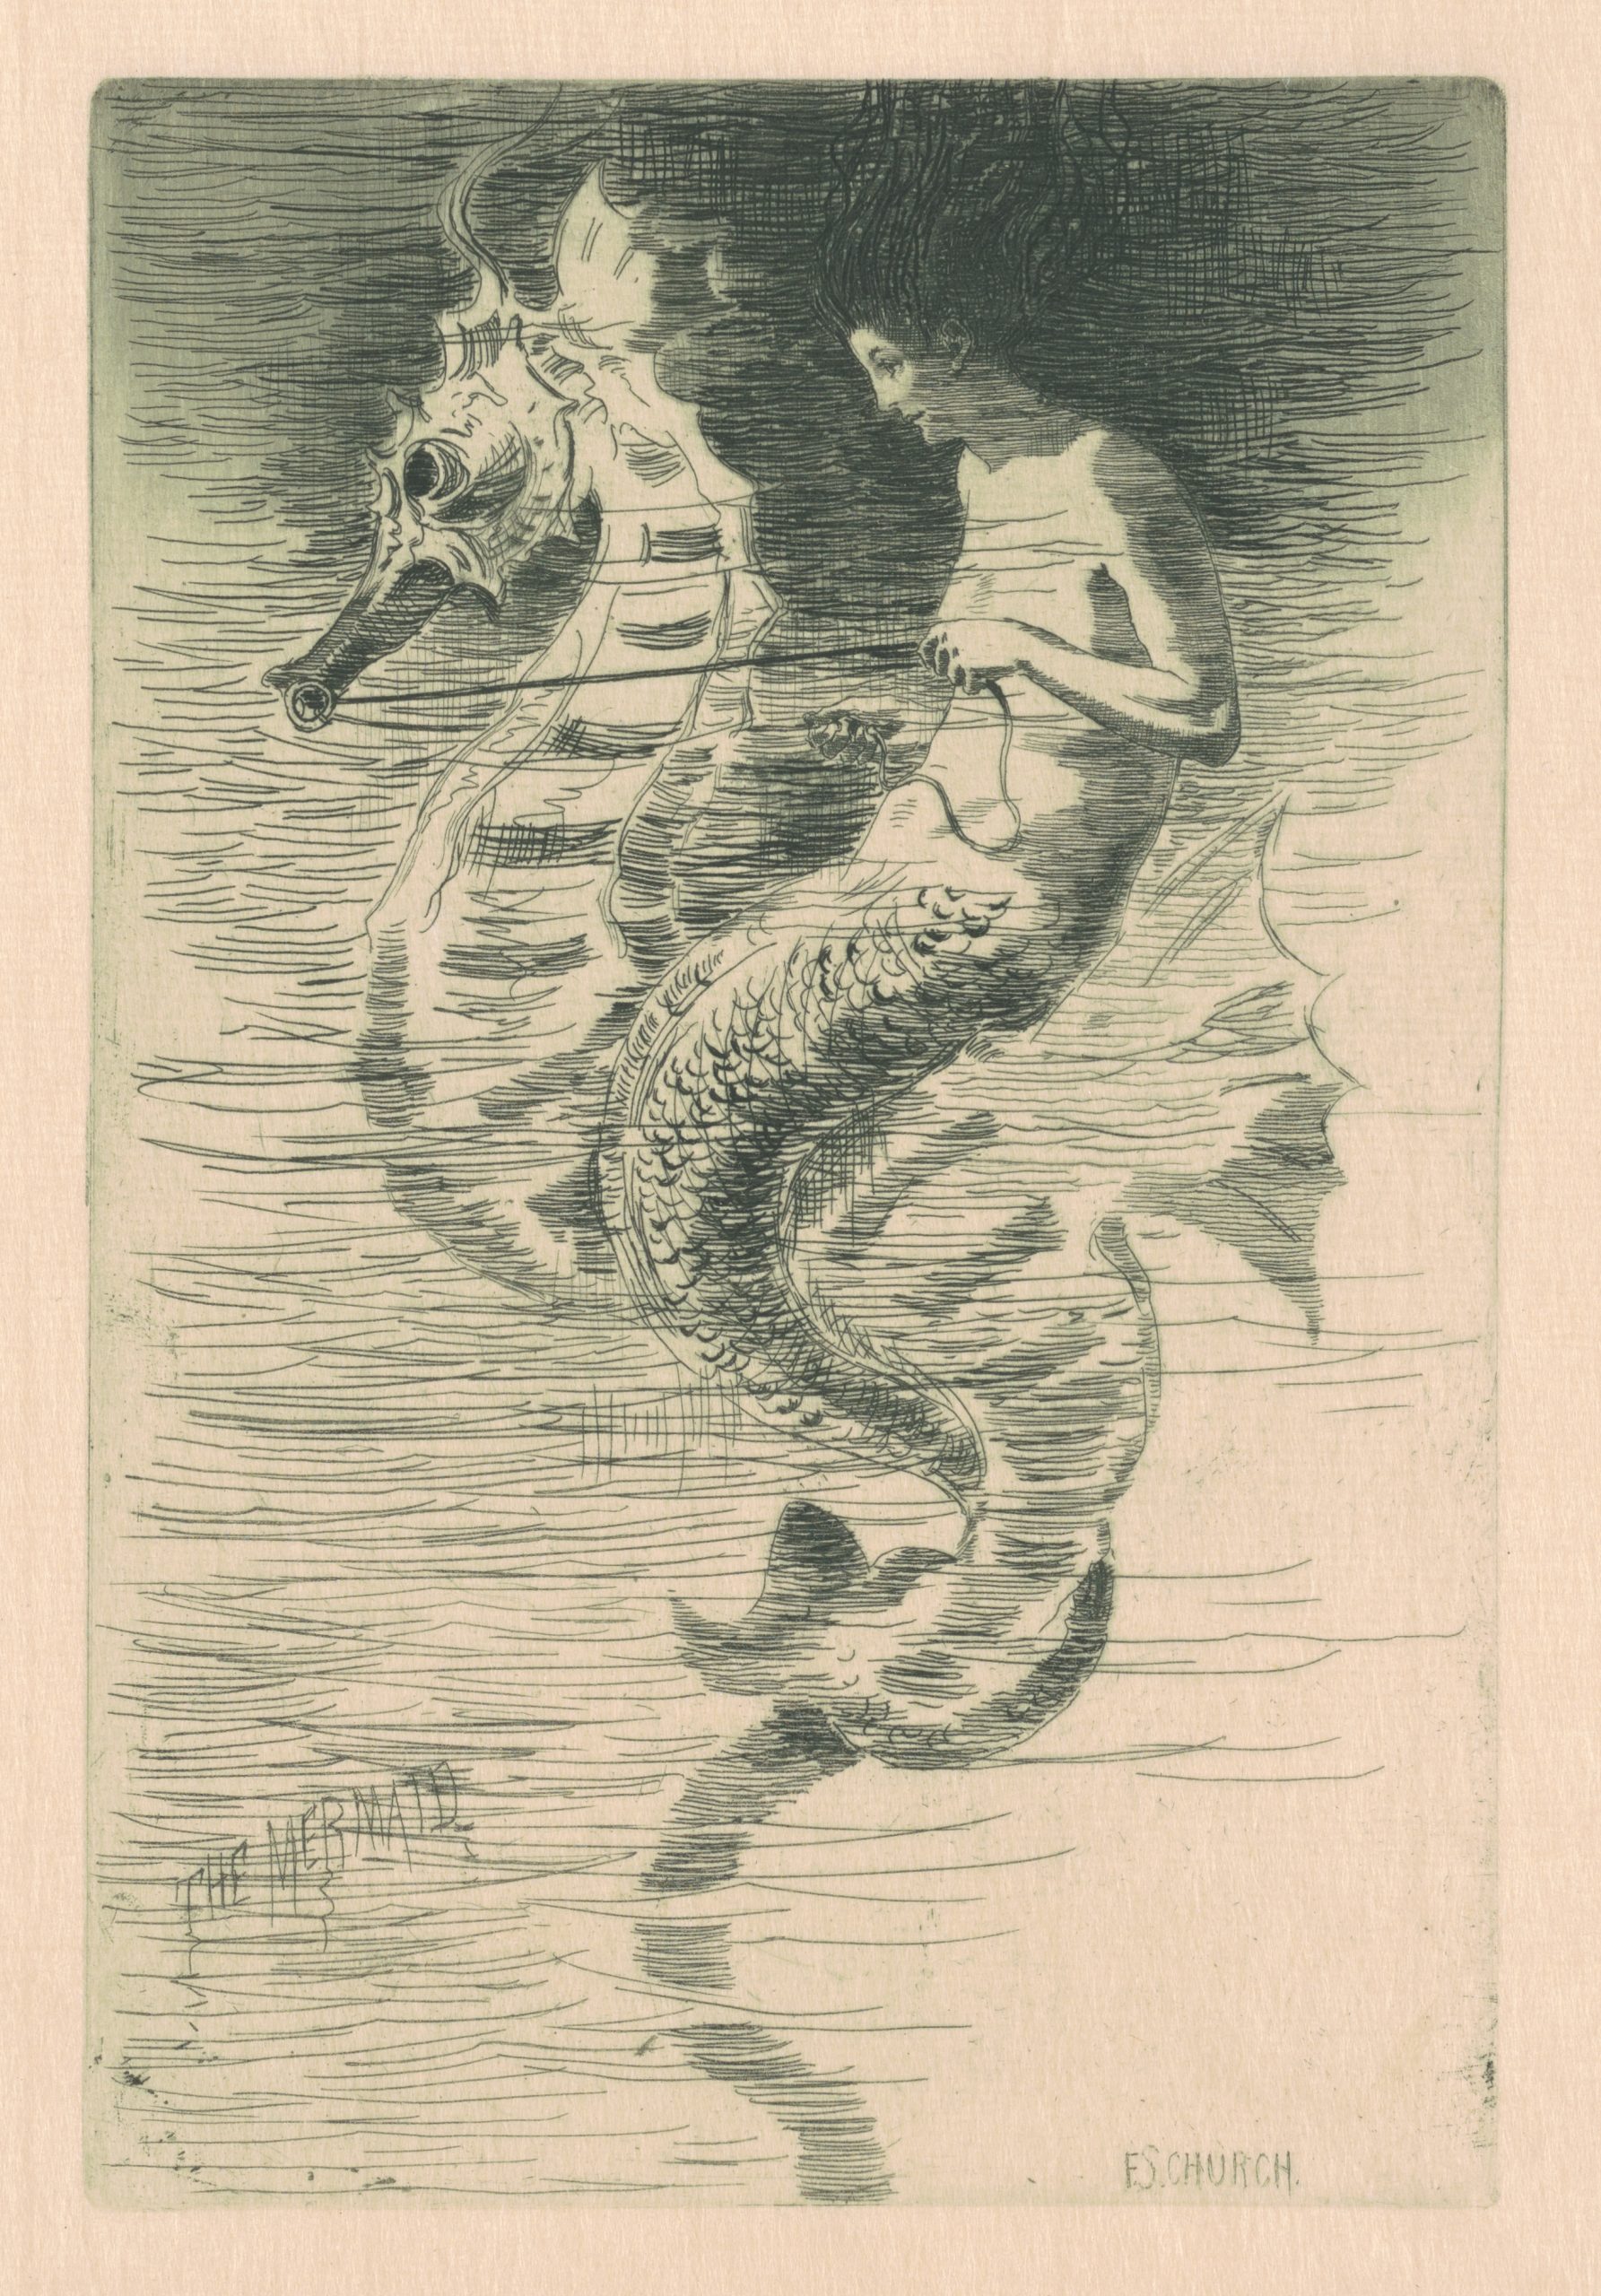 A mermaid riding a seahorse